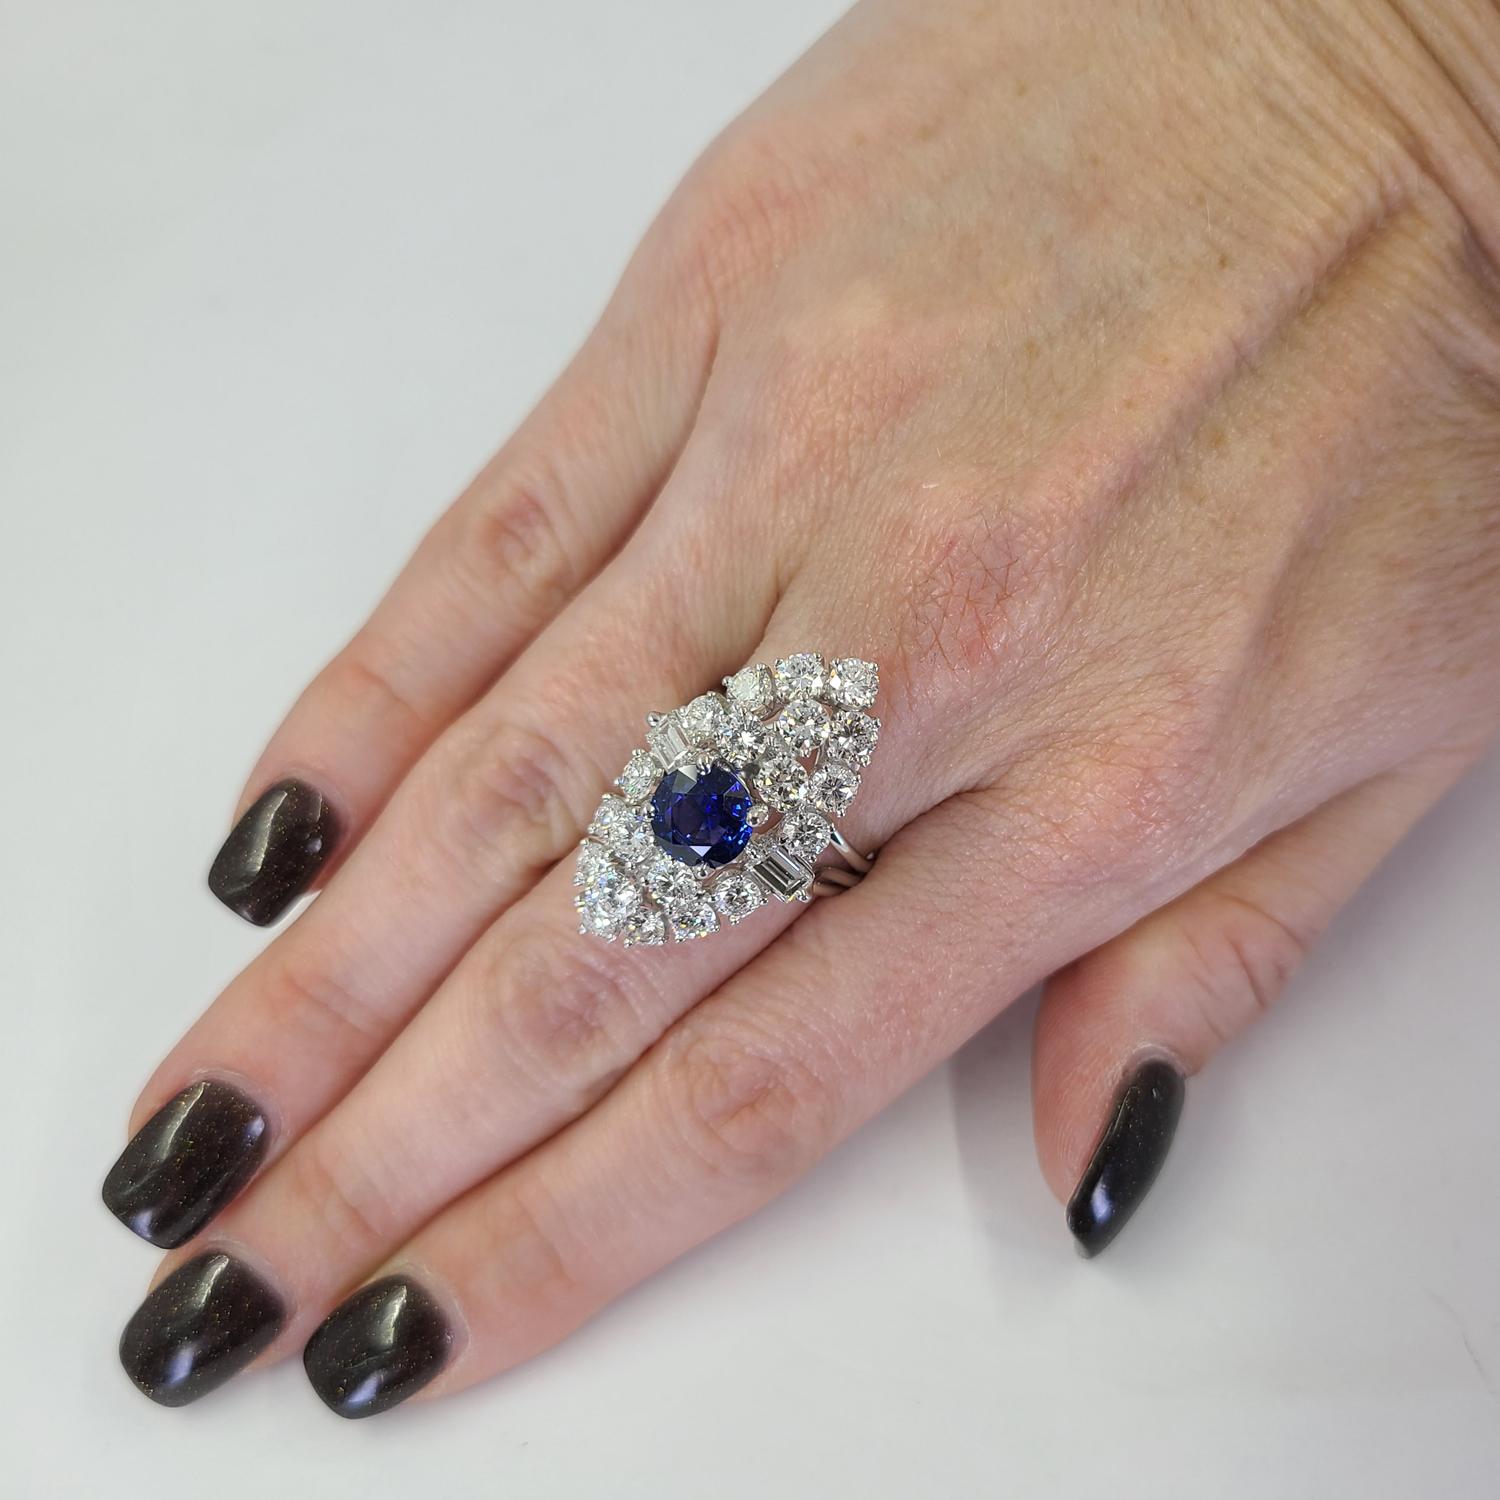 Platinum Vintage Dinner Ring mit einem 2,00 Karat runden Saphir akzentuiert durch 22 Runde & Baguette Cut Diamanten von VS Clarity & G Farbe insgesamt ca. 3,50 Karat. Fingergröße 6; Der Kauf beinhaltet einen Größenservice. Das fertige Gewicht